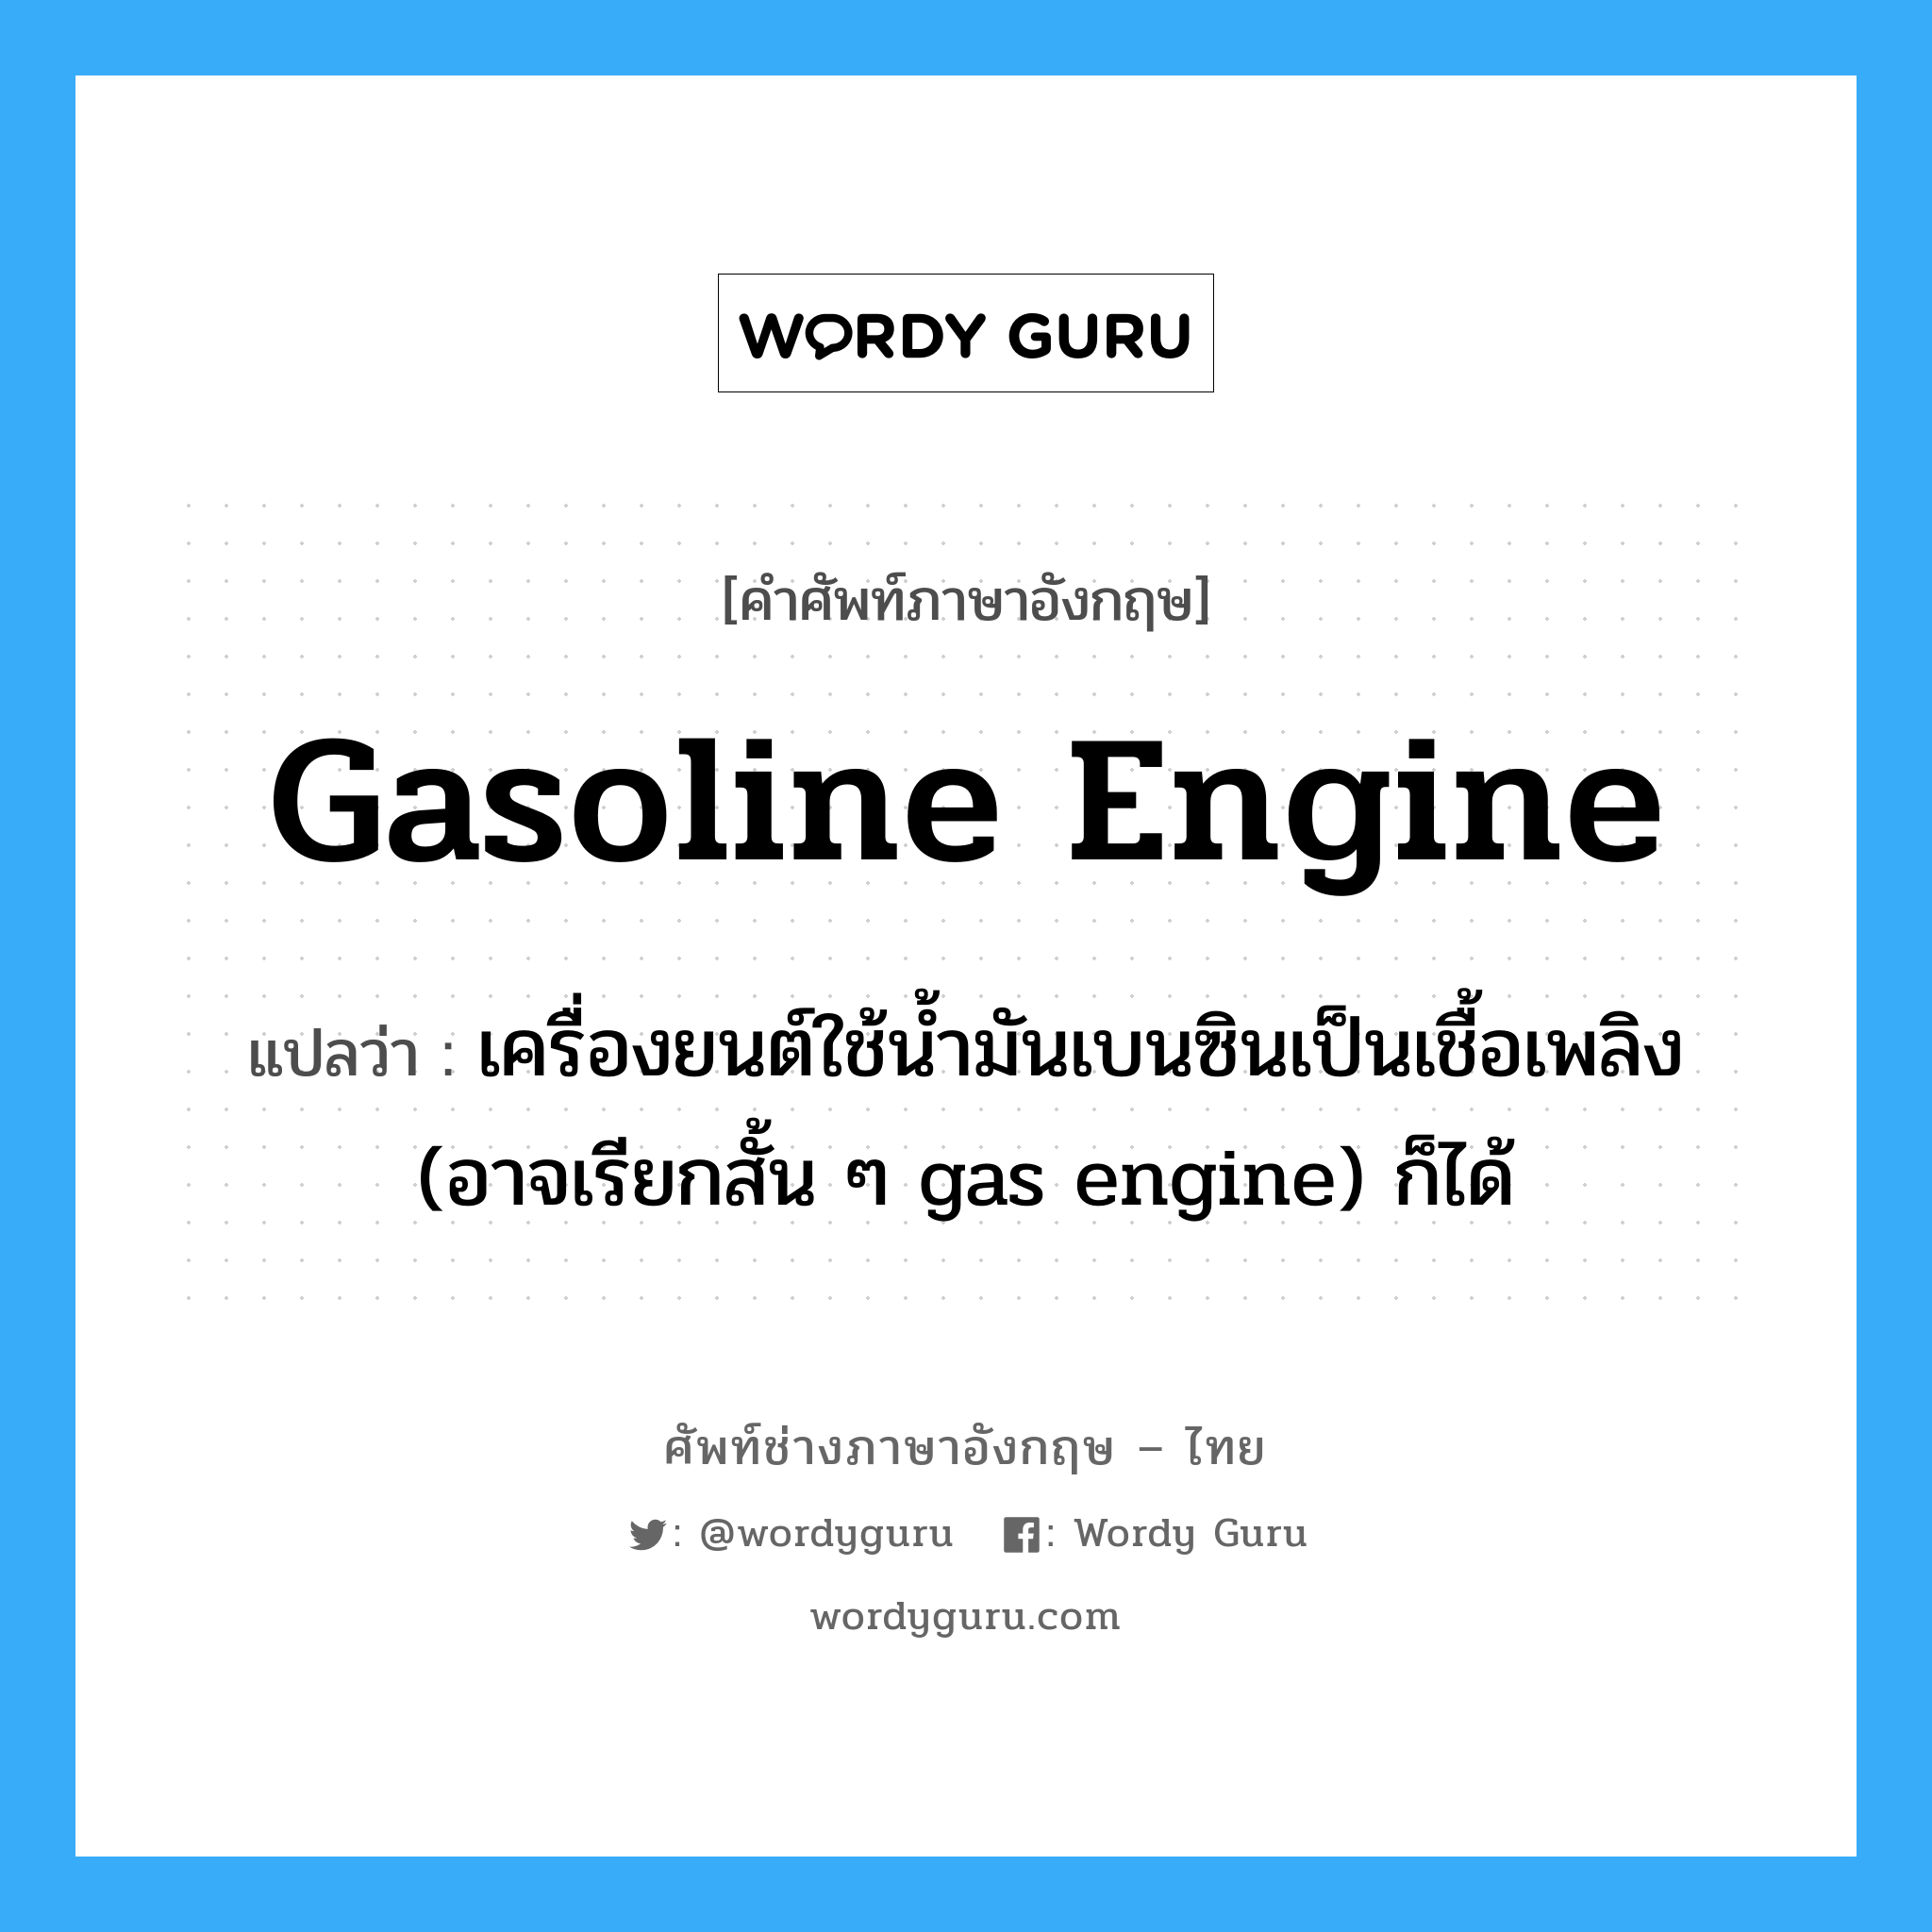 เครื่องยนต์ใช้น้ำมันเบนซินเป็นเชื้อเพลิง (อาจเรียกสั้น ๆ gas engine) ก็ได้ ภาษาอังกฤษ?, คำศัพท์ช่างภาษาอังกฤษ - ไทย เครื่องยนต์ใช้น้ำมันเบนซินเป็นเชื้อเพลิง (อาจเรียกสั้น ๆ gas engine) ก็ได้ คำศัพท์ภาษาอังกฤษ เครื่องยนต์ใช้น้ำมันเบนซินเป็นเชื้อเพลิง (อาจเรียกสั้น ๆ gas engine) ก็ได้ แปลว่า gasoline engine